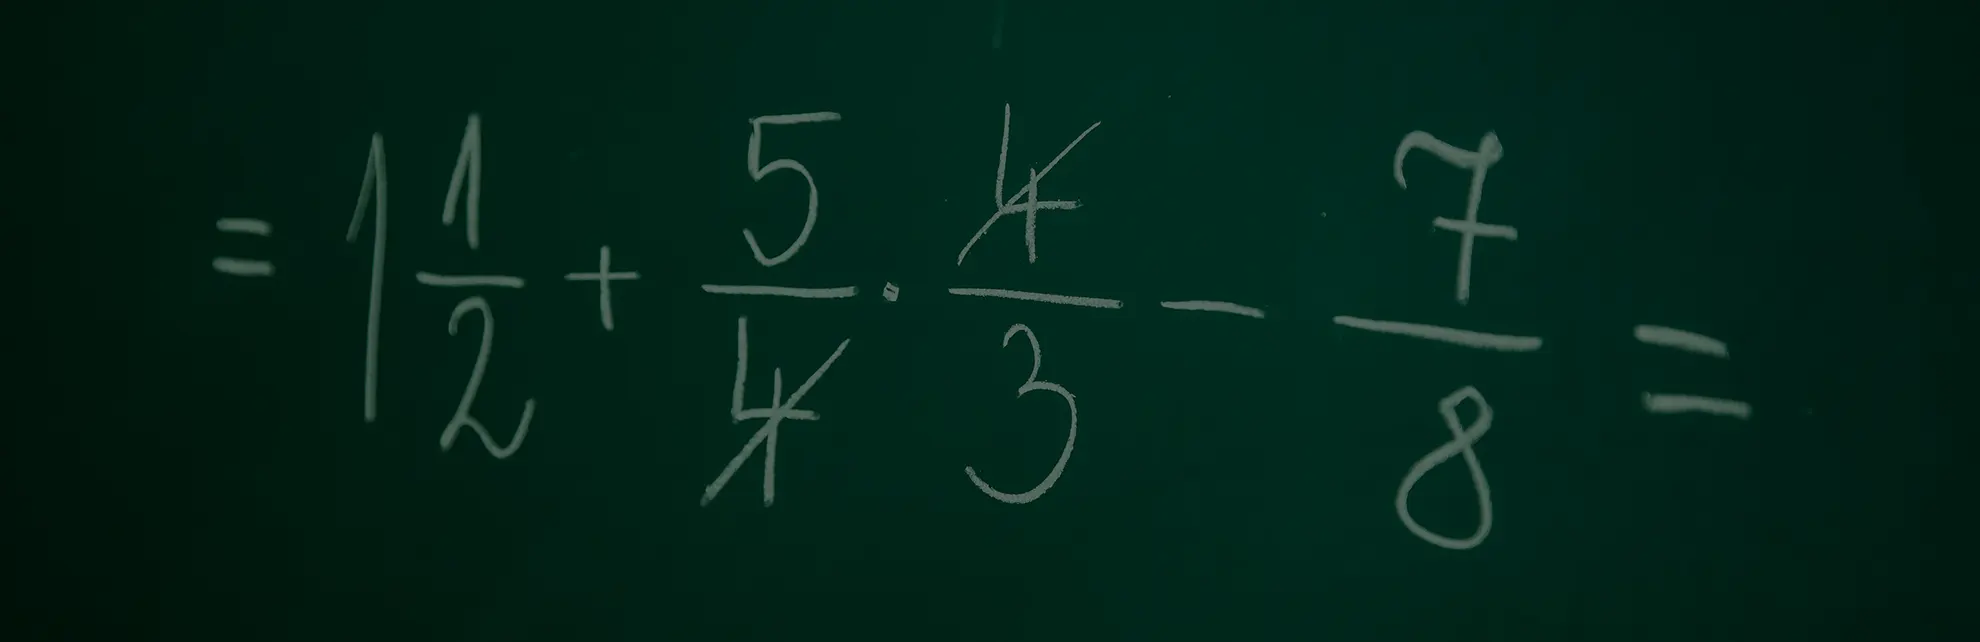 fractions on a blackboard